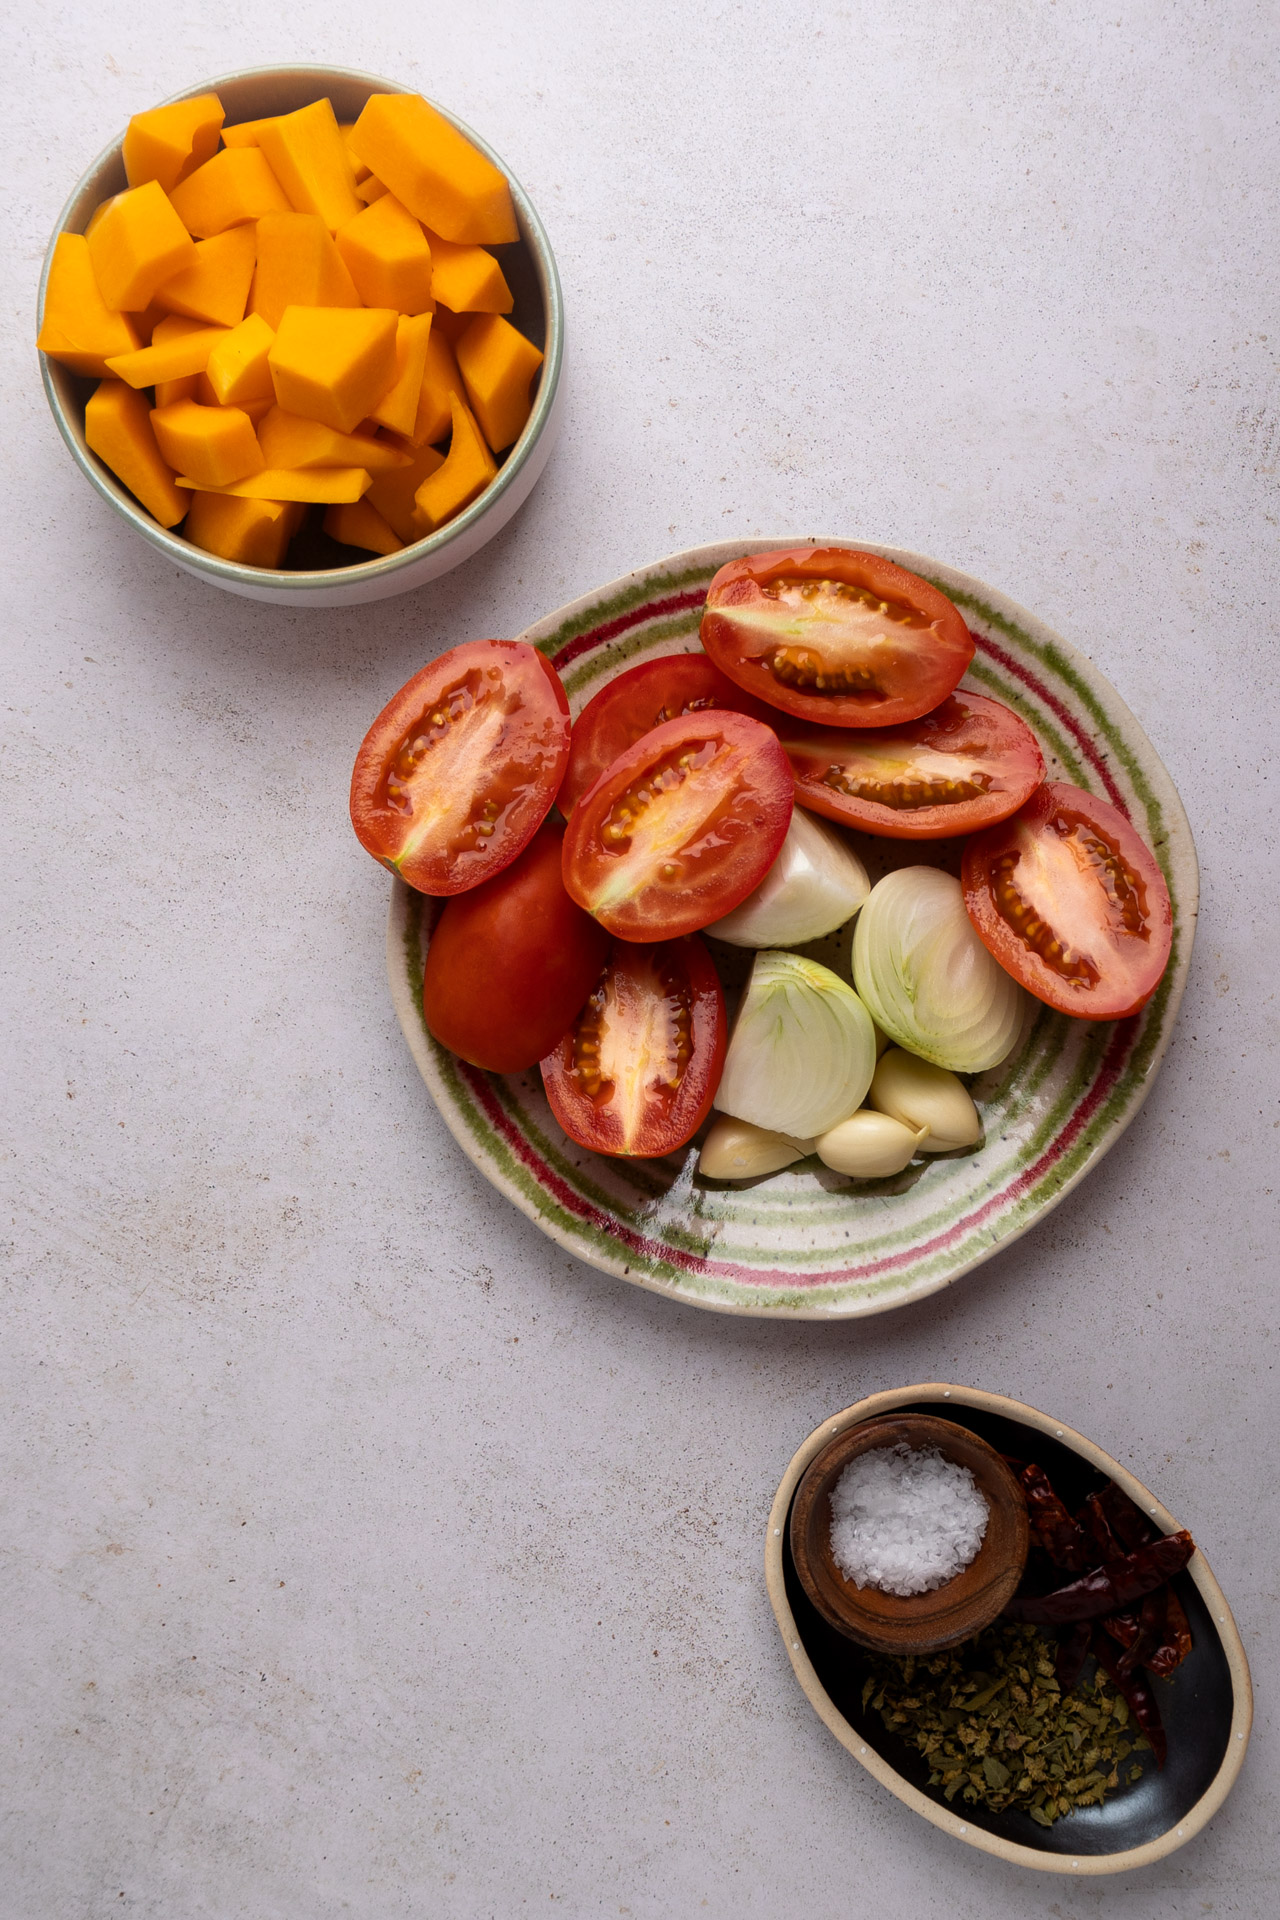 Vista de arriba hacia abajo de los ingredientes en la encimera de la cocina, incluidos tomates en rodajas, cebollas, ajo, mango cortado en cubitos, sopa de calabaza y un plato de especias y sal.